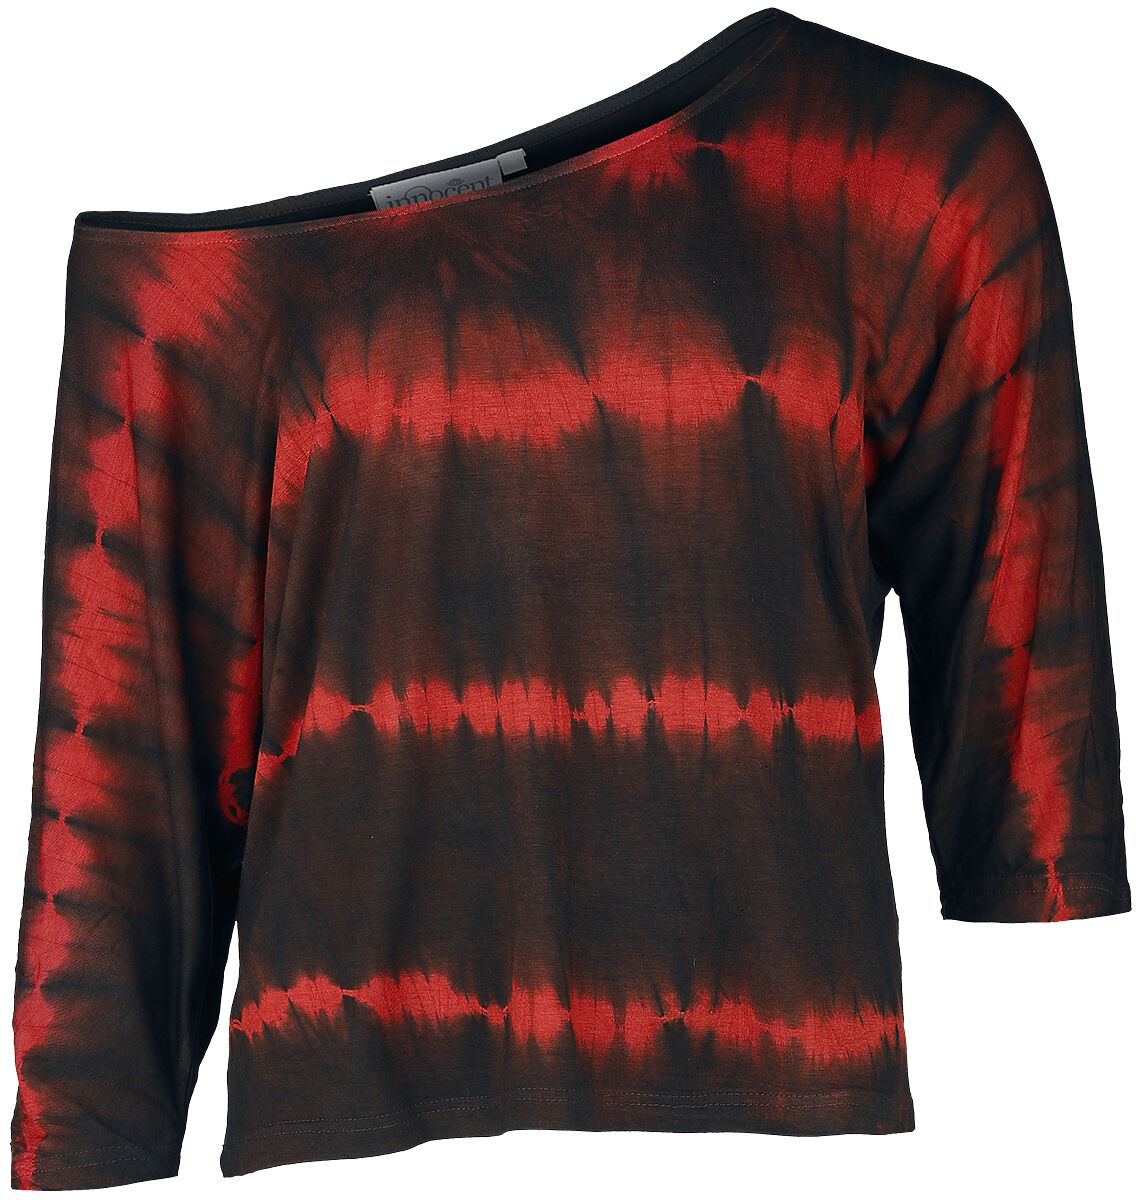 Innocent - Gothic Langarmshirt - Solana Top - XS bis 4XL - für Damen - Größe XS - schwarz/rot